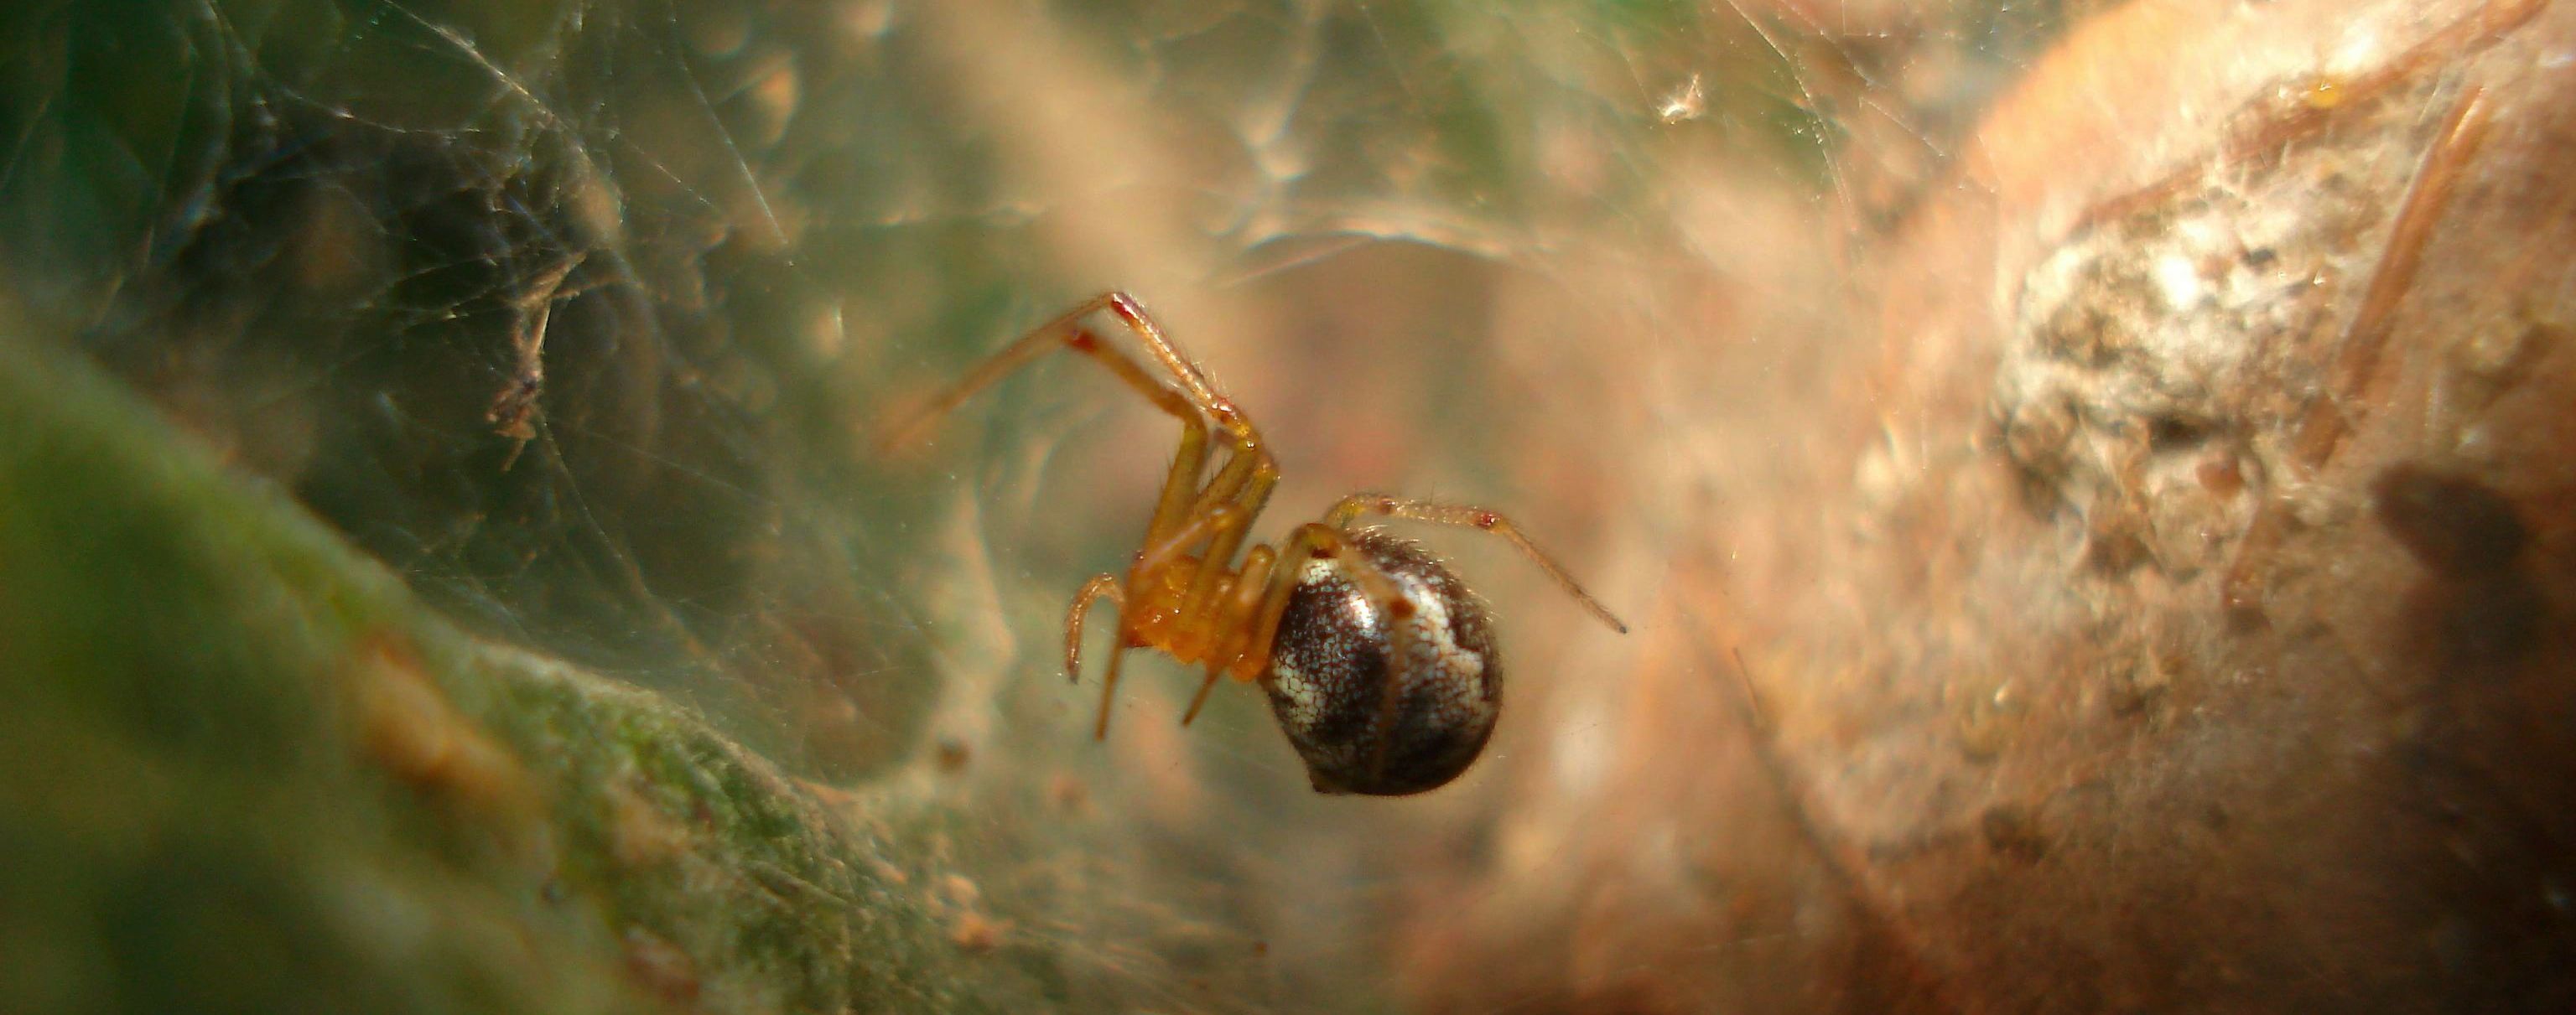 Через "кліматичний хаос" павуки стають дедалі агресивнішими – дослідження